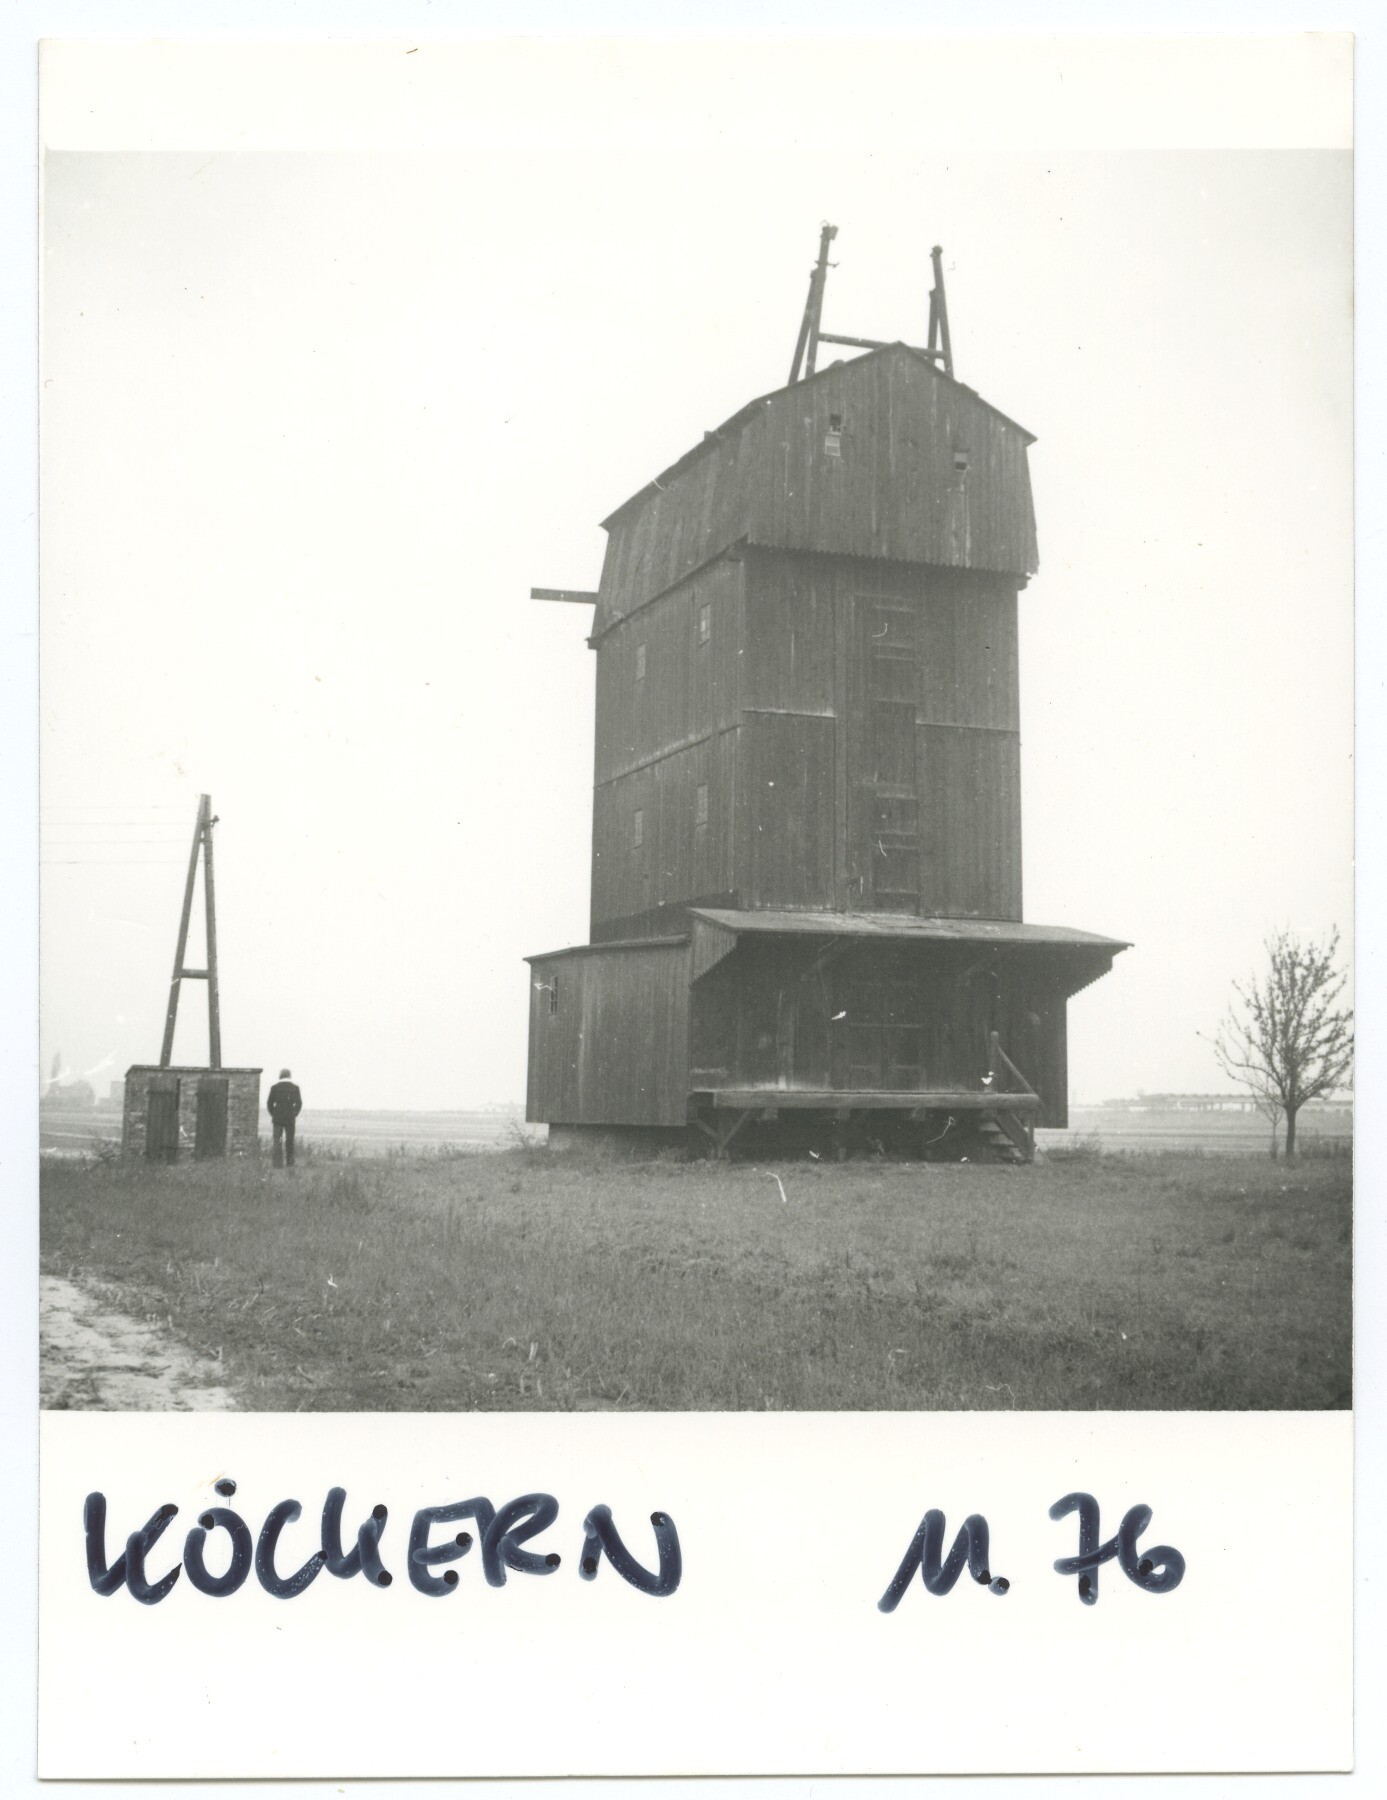 Paltrockmühle Höhne in Köckern (Historische Mühle von Sanssouci CC BY-NC-ND)